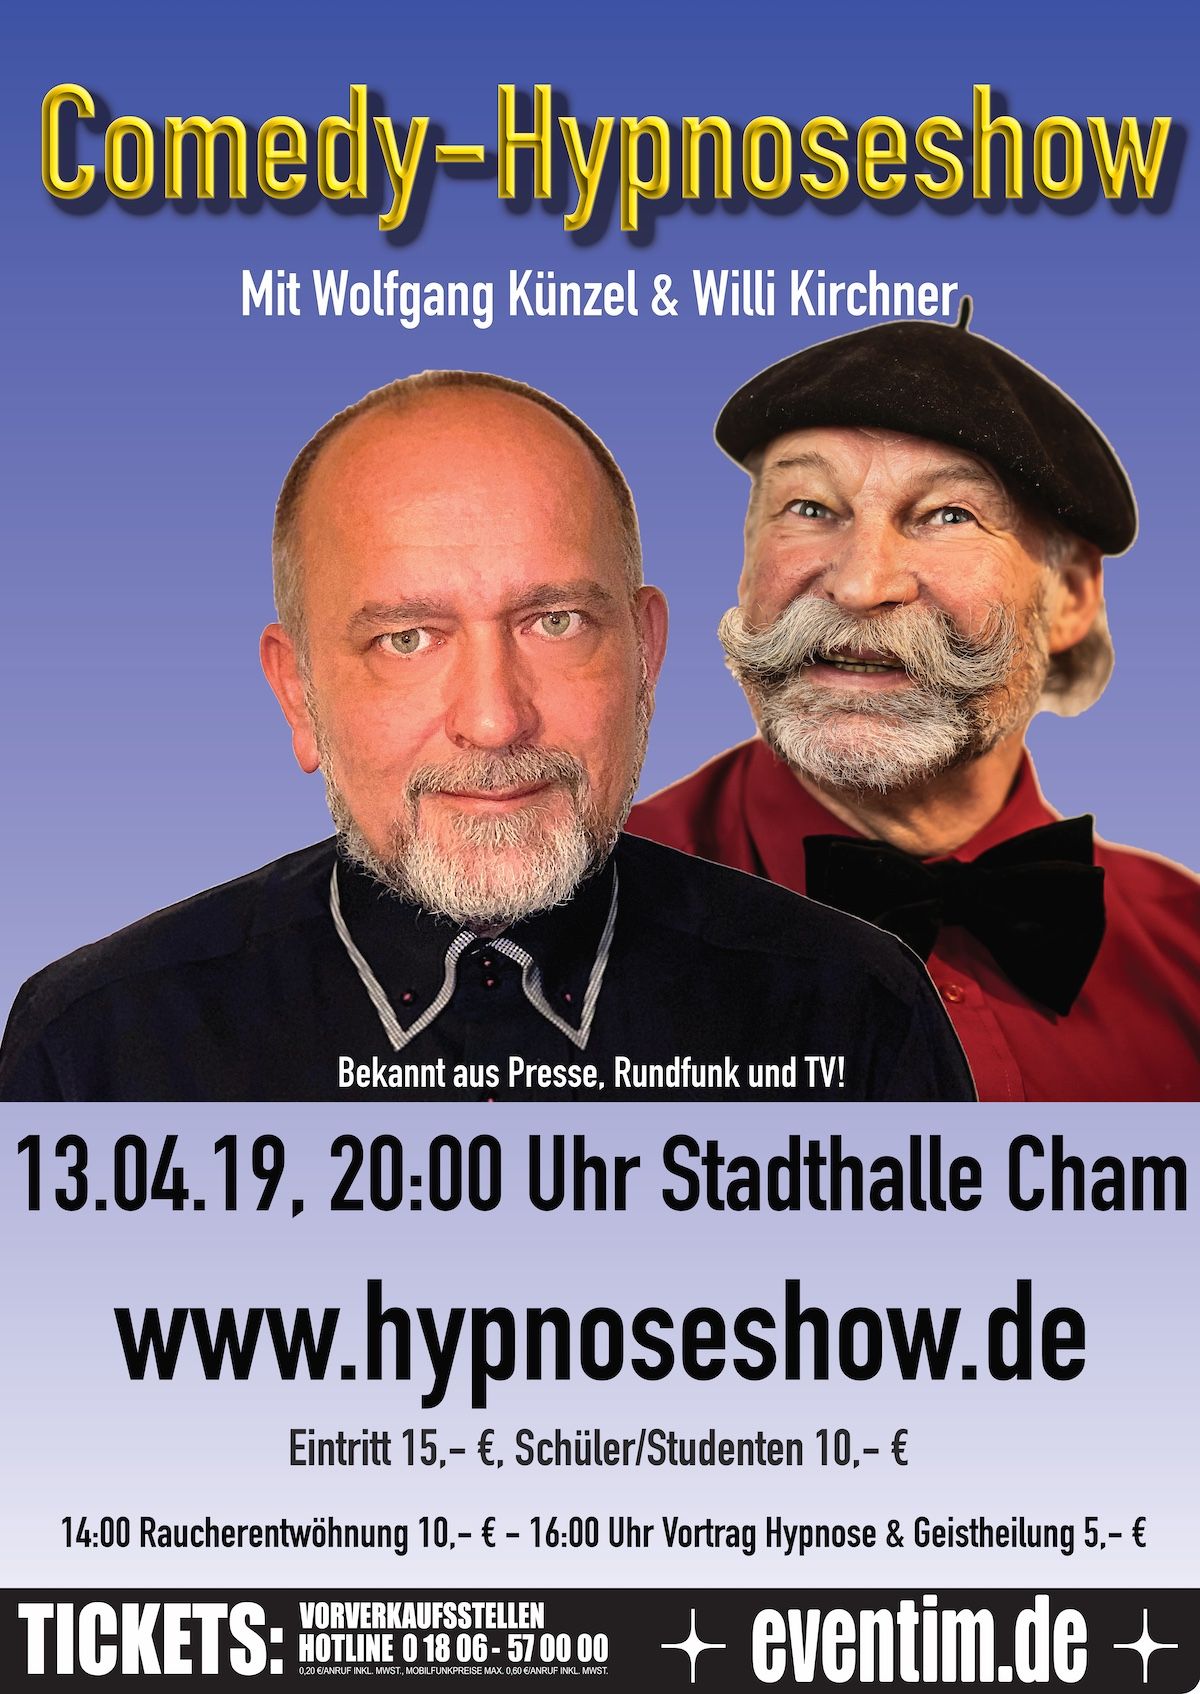 Plakat der Comedy Hypnoseshow am 13.4.19 in der Stadthalle Cham